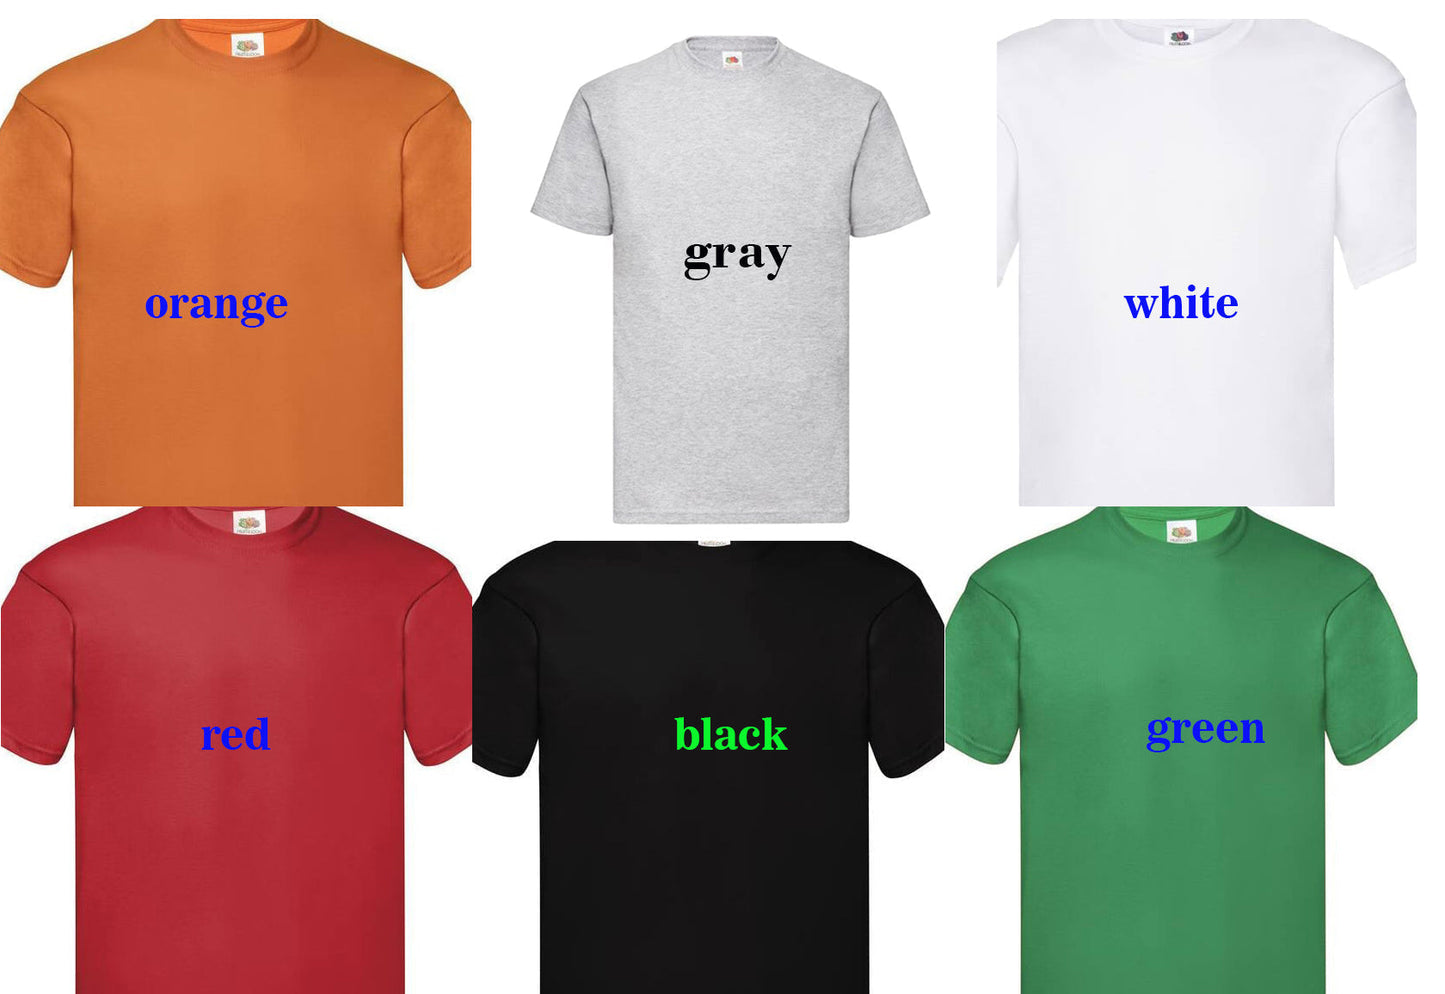 245. IRISH 10, Custom Made Shirt, Personalized T-Shirt, Custom Text, Make Your Own Shirt, Custom Tee